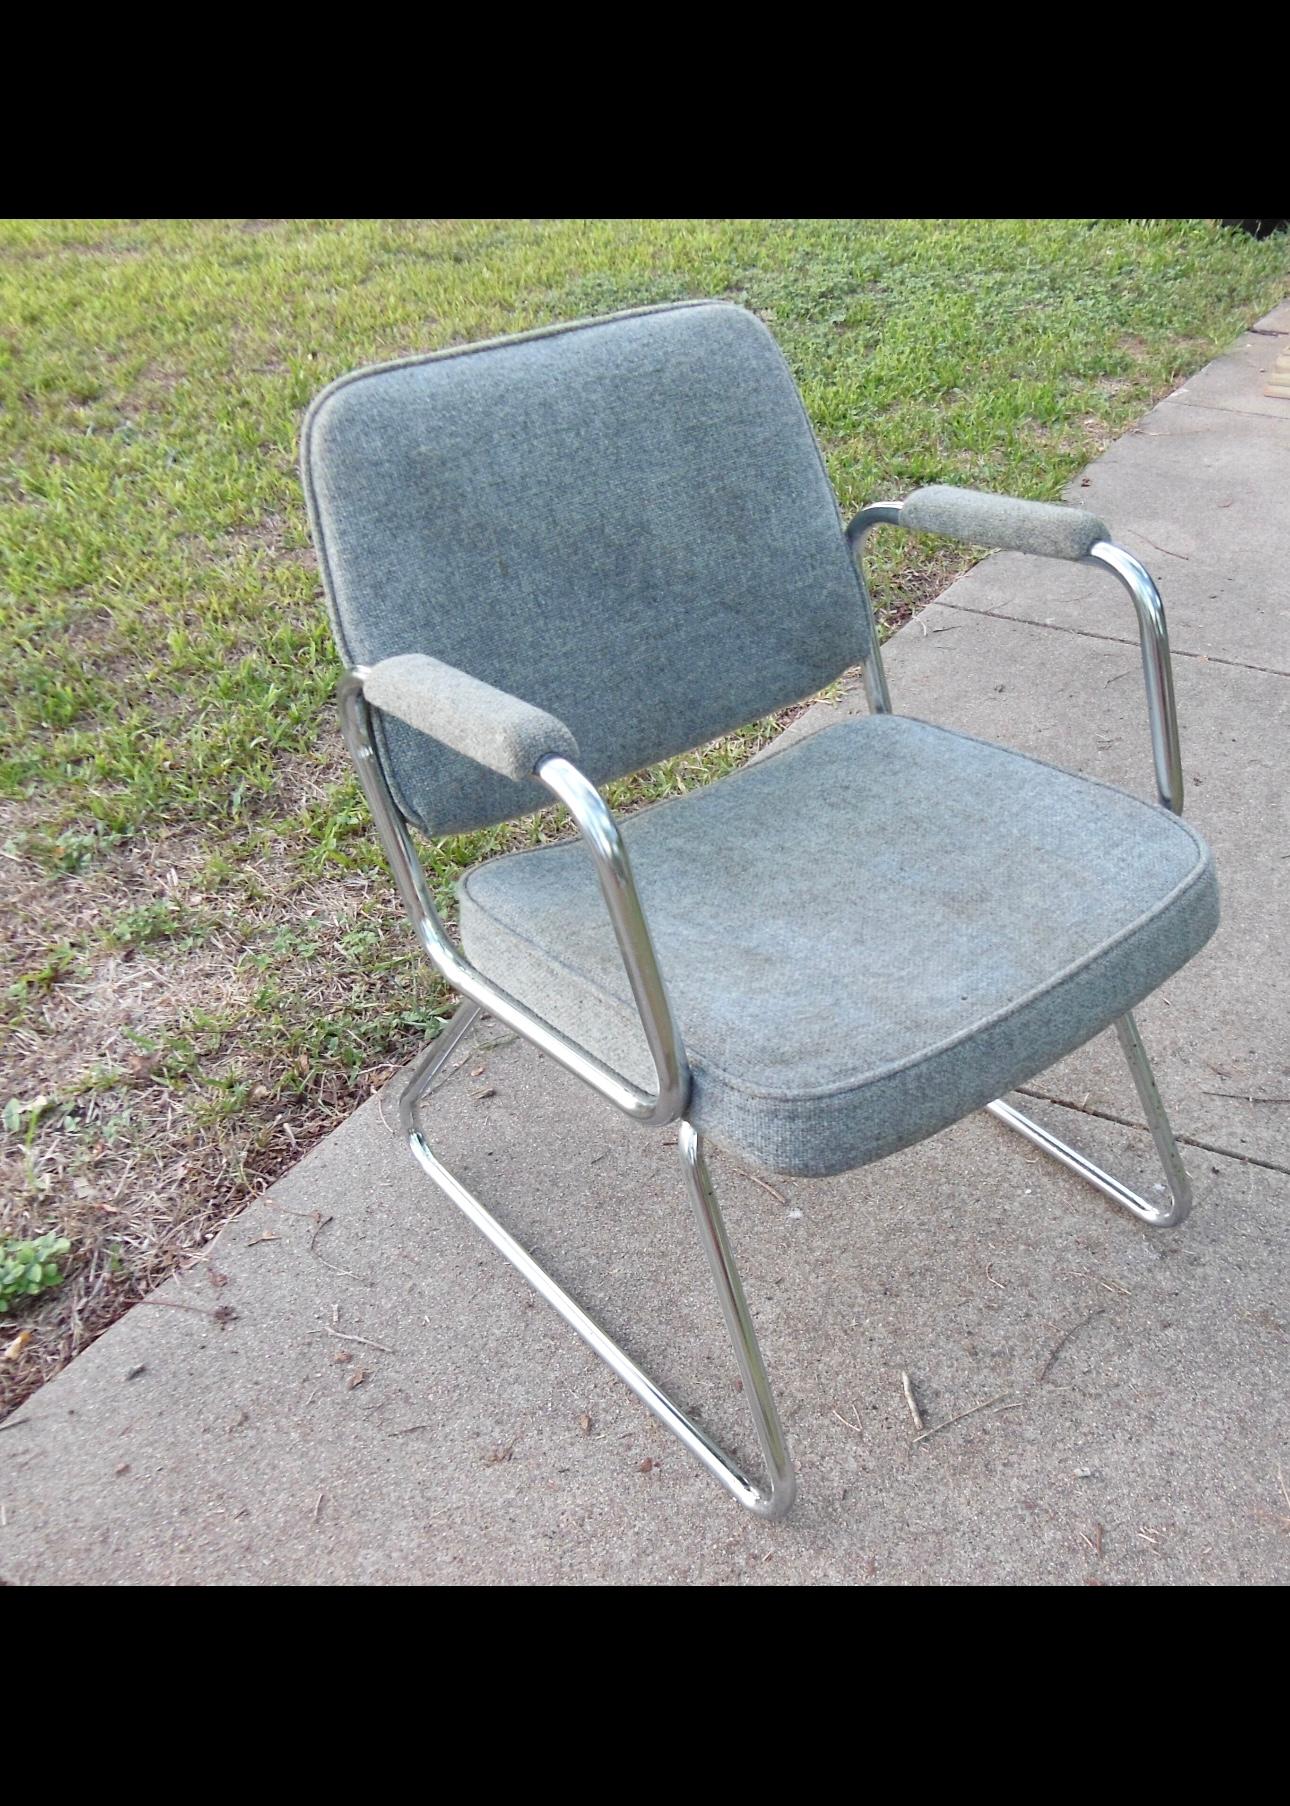 Véritable icône du design du milieu du siècle, ce fauteuil en aluminium tubulaire des années 1990 allie sans effort forme et fonction avec une touche de nostalgie. Les lignes épurées et les courbes douces du cadre en aluminium dégagent une élégance